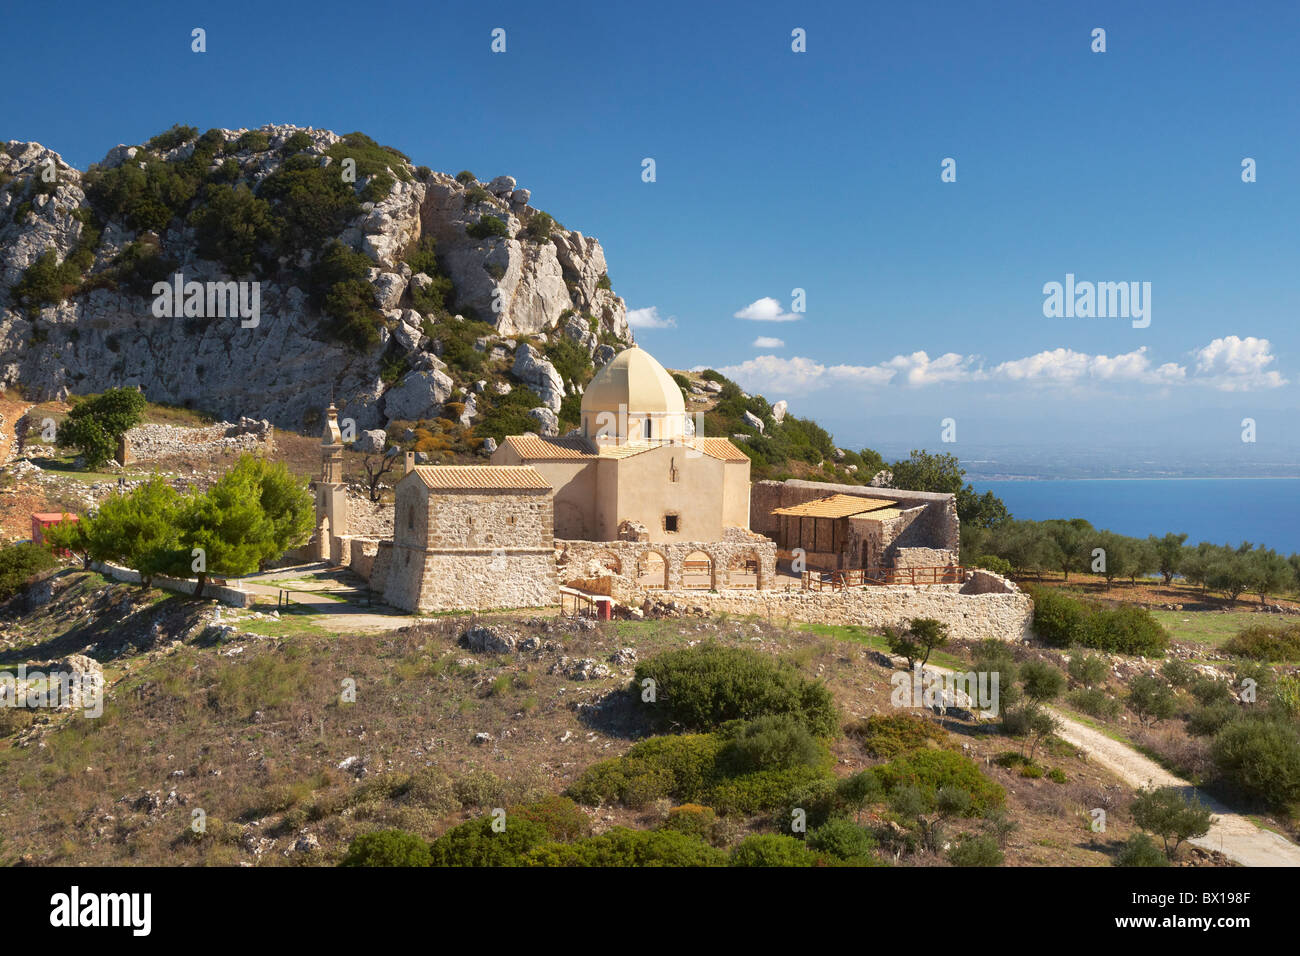 L'île de Zakynthos, Grèce - Mer Ionienne, église Byzantine à Skopos Banque D'Images